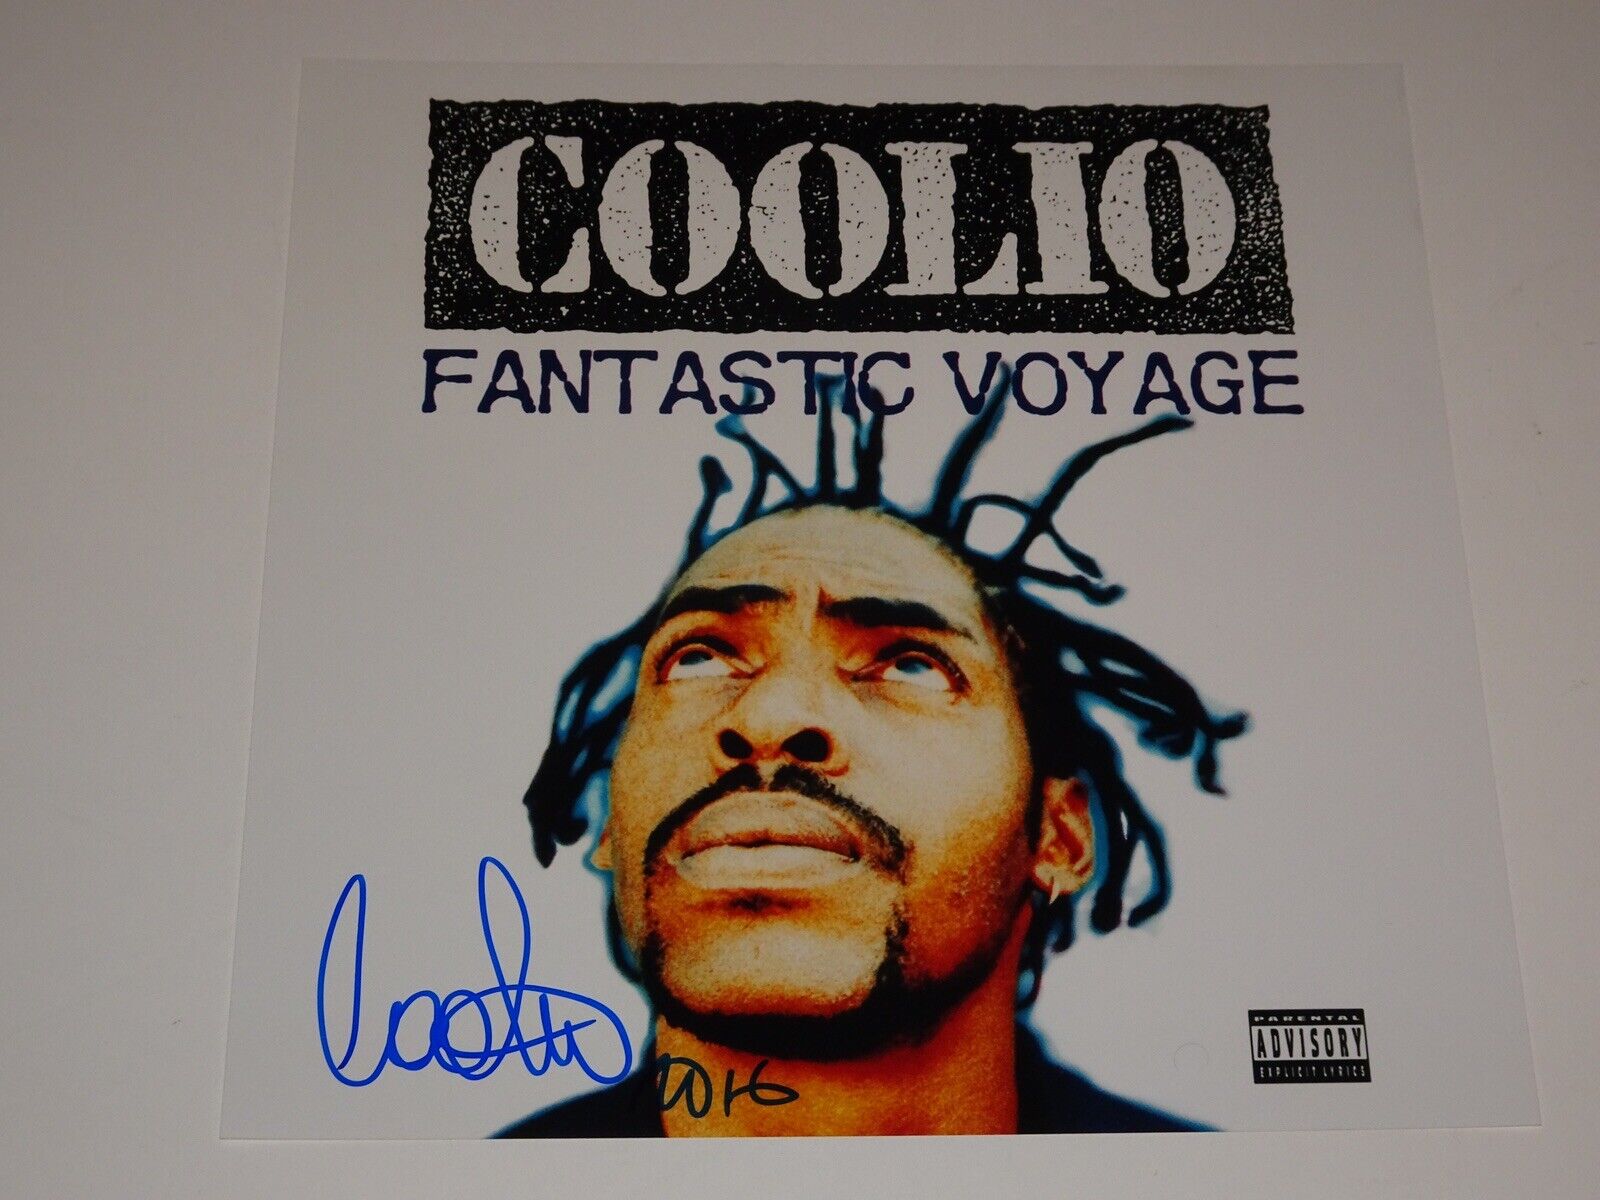 COOLIO SIGNED 12 x12 FANTASTIC VOYAGE ALBUM LP FLAT PHOTO AUTOGRAPHED